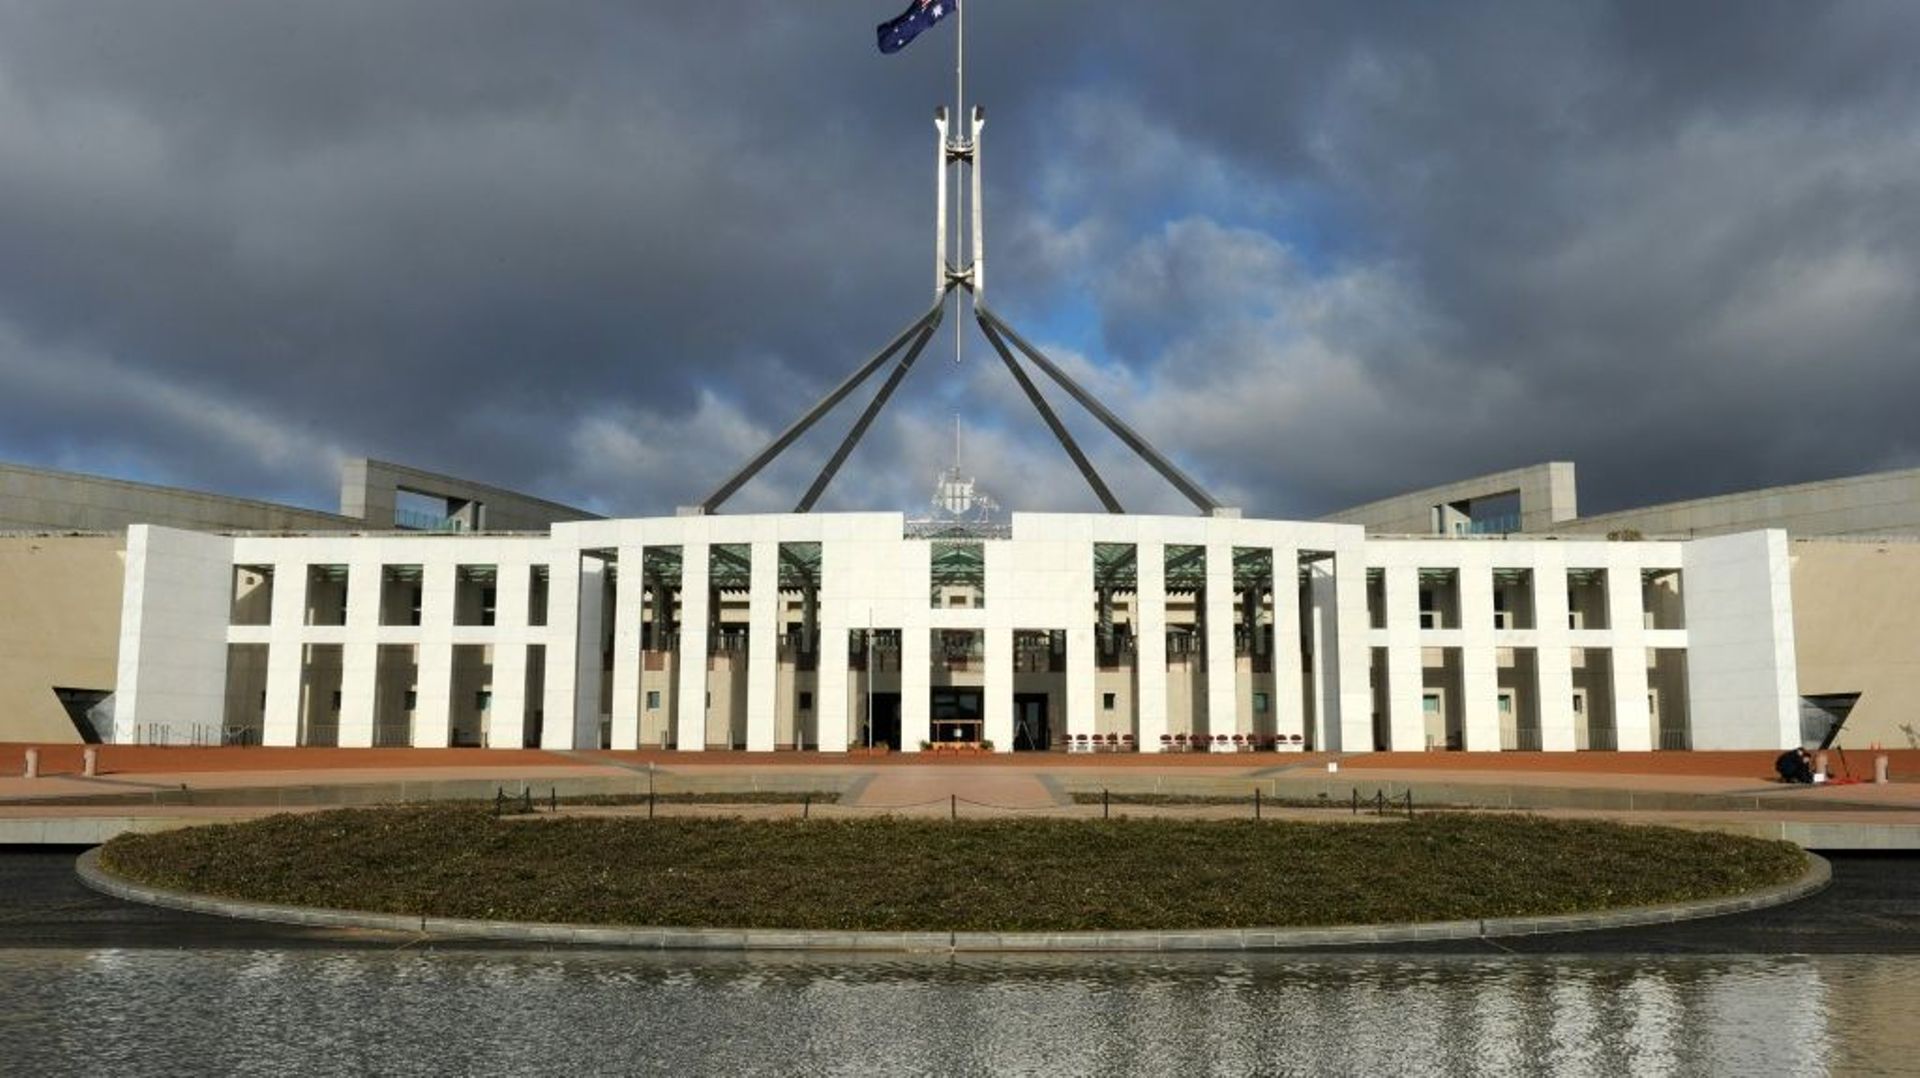 Le Parlement australien s'apprête à ouvrir une enquête sur une éventuelle influence étrangère au sein de ses universités publiques